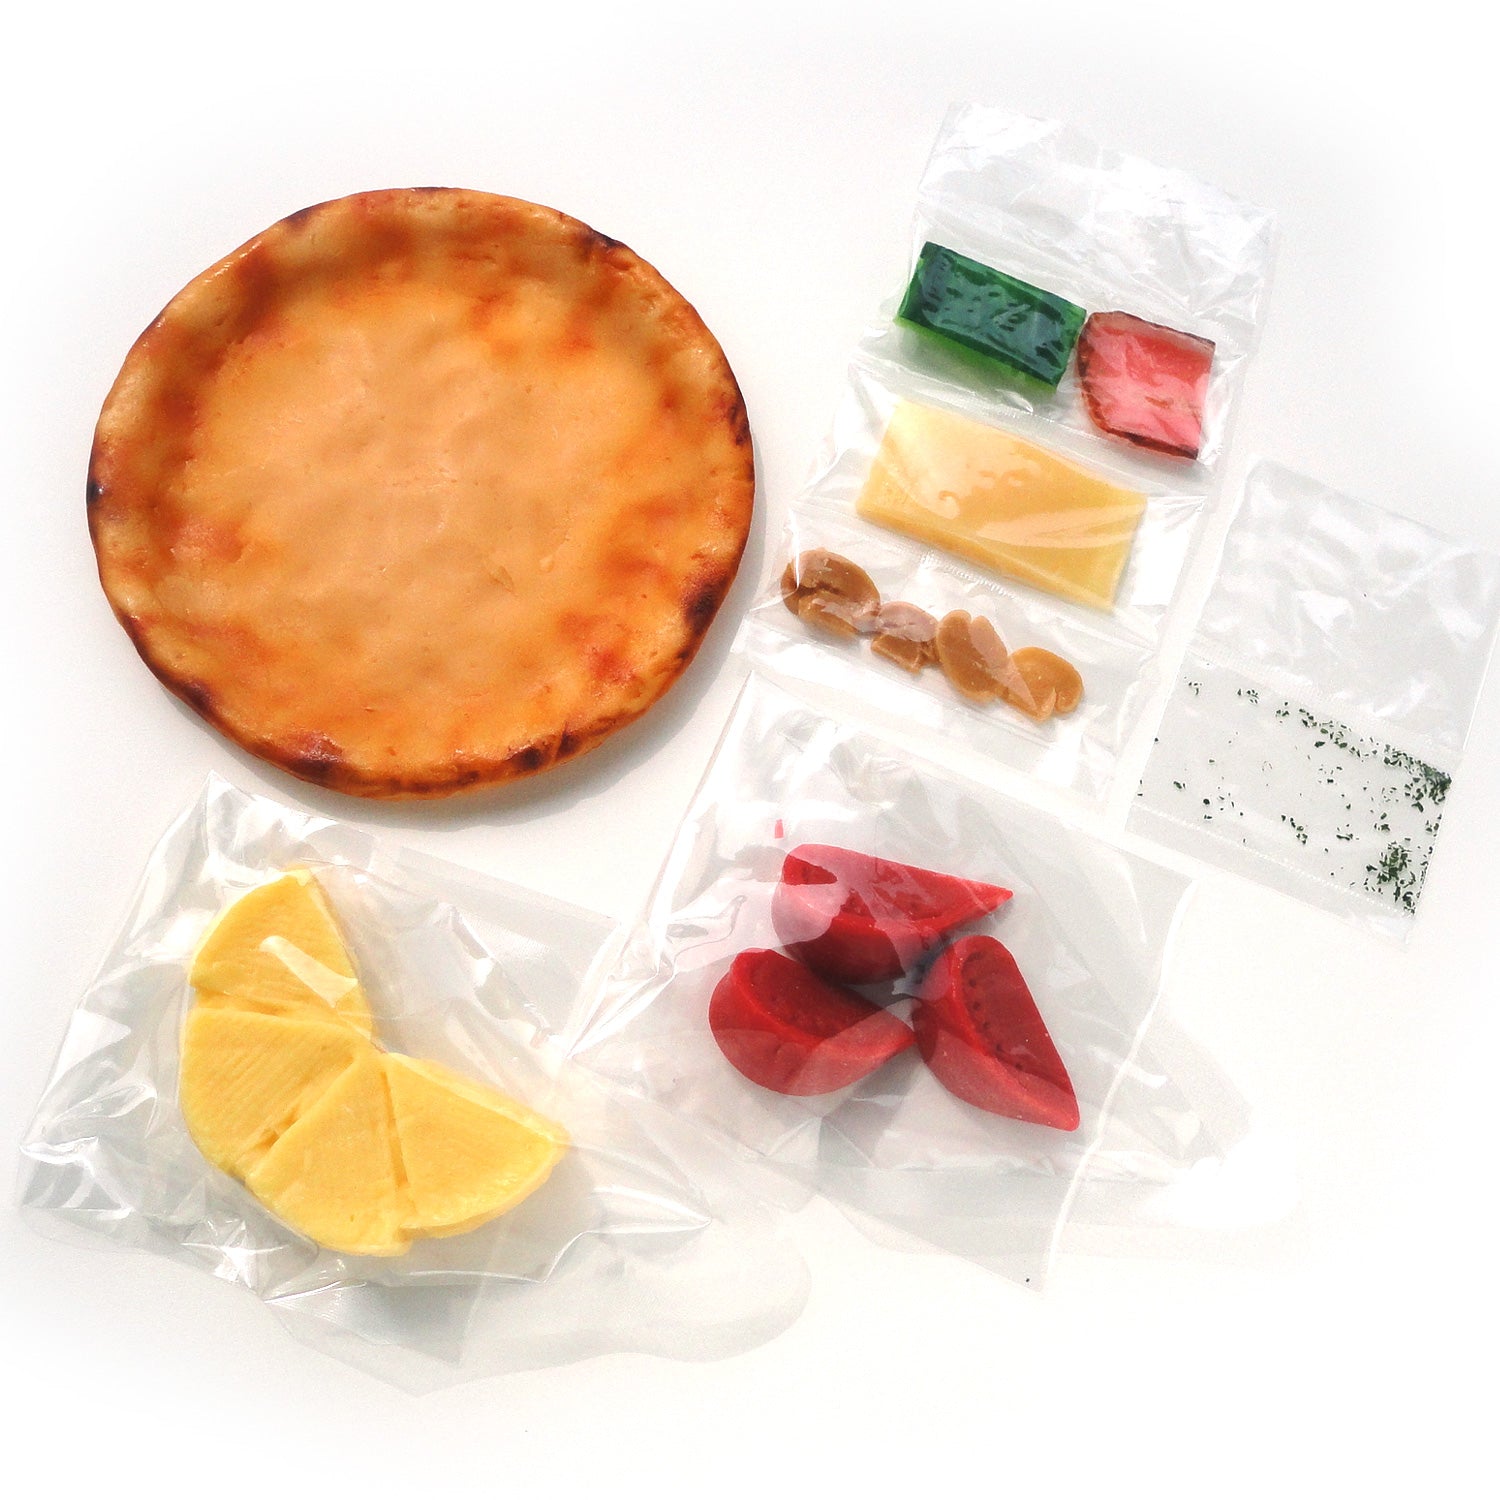 自分でつくる食品サンプル製作キット「さんぷるんvol.2 ミックスピザ」の内容物の画像です。